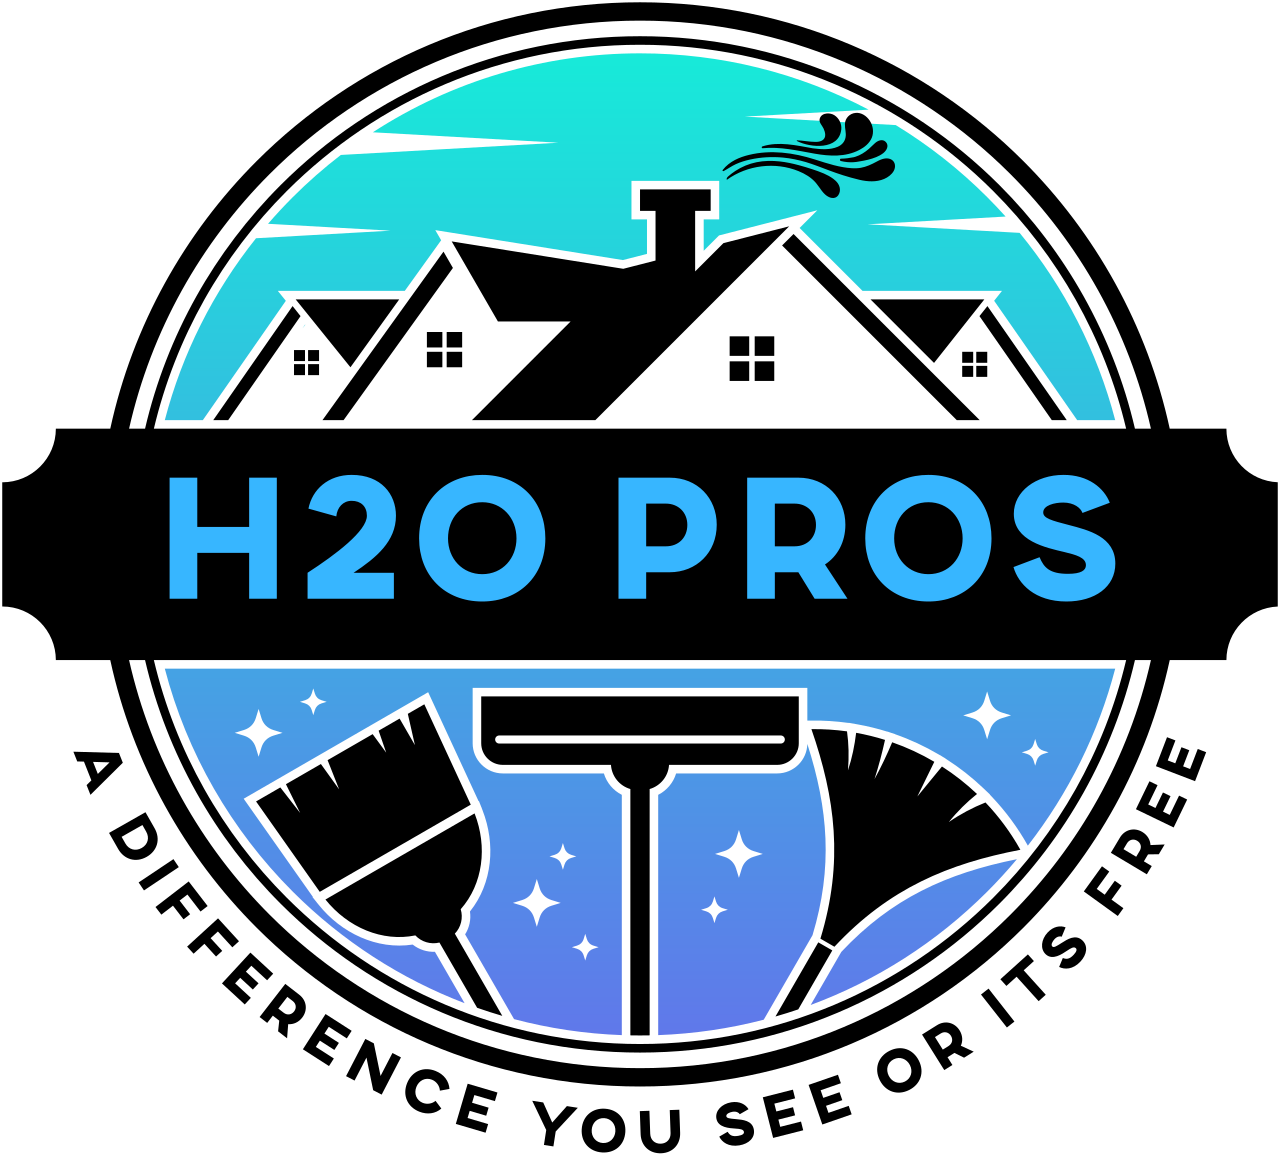 h2o pros's logo